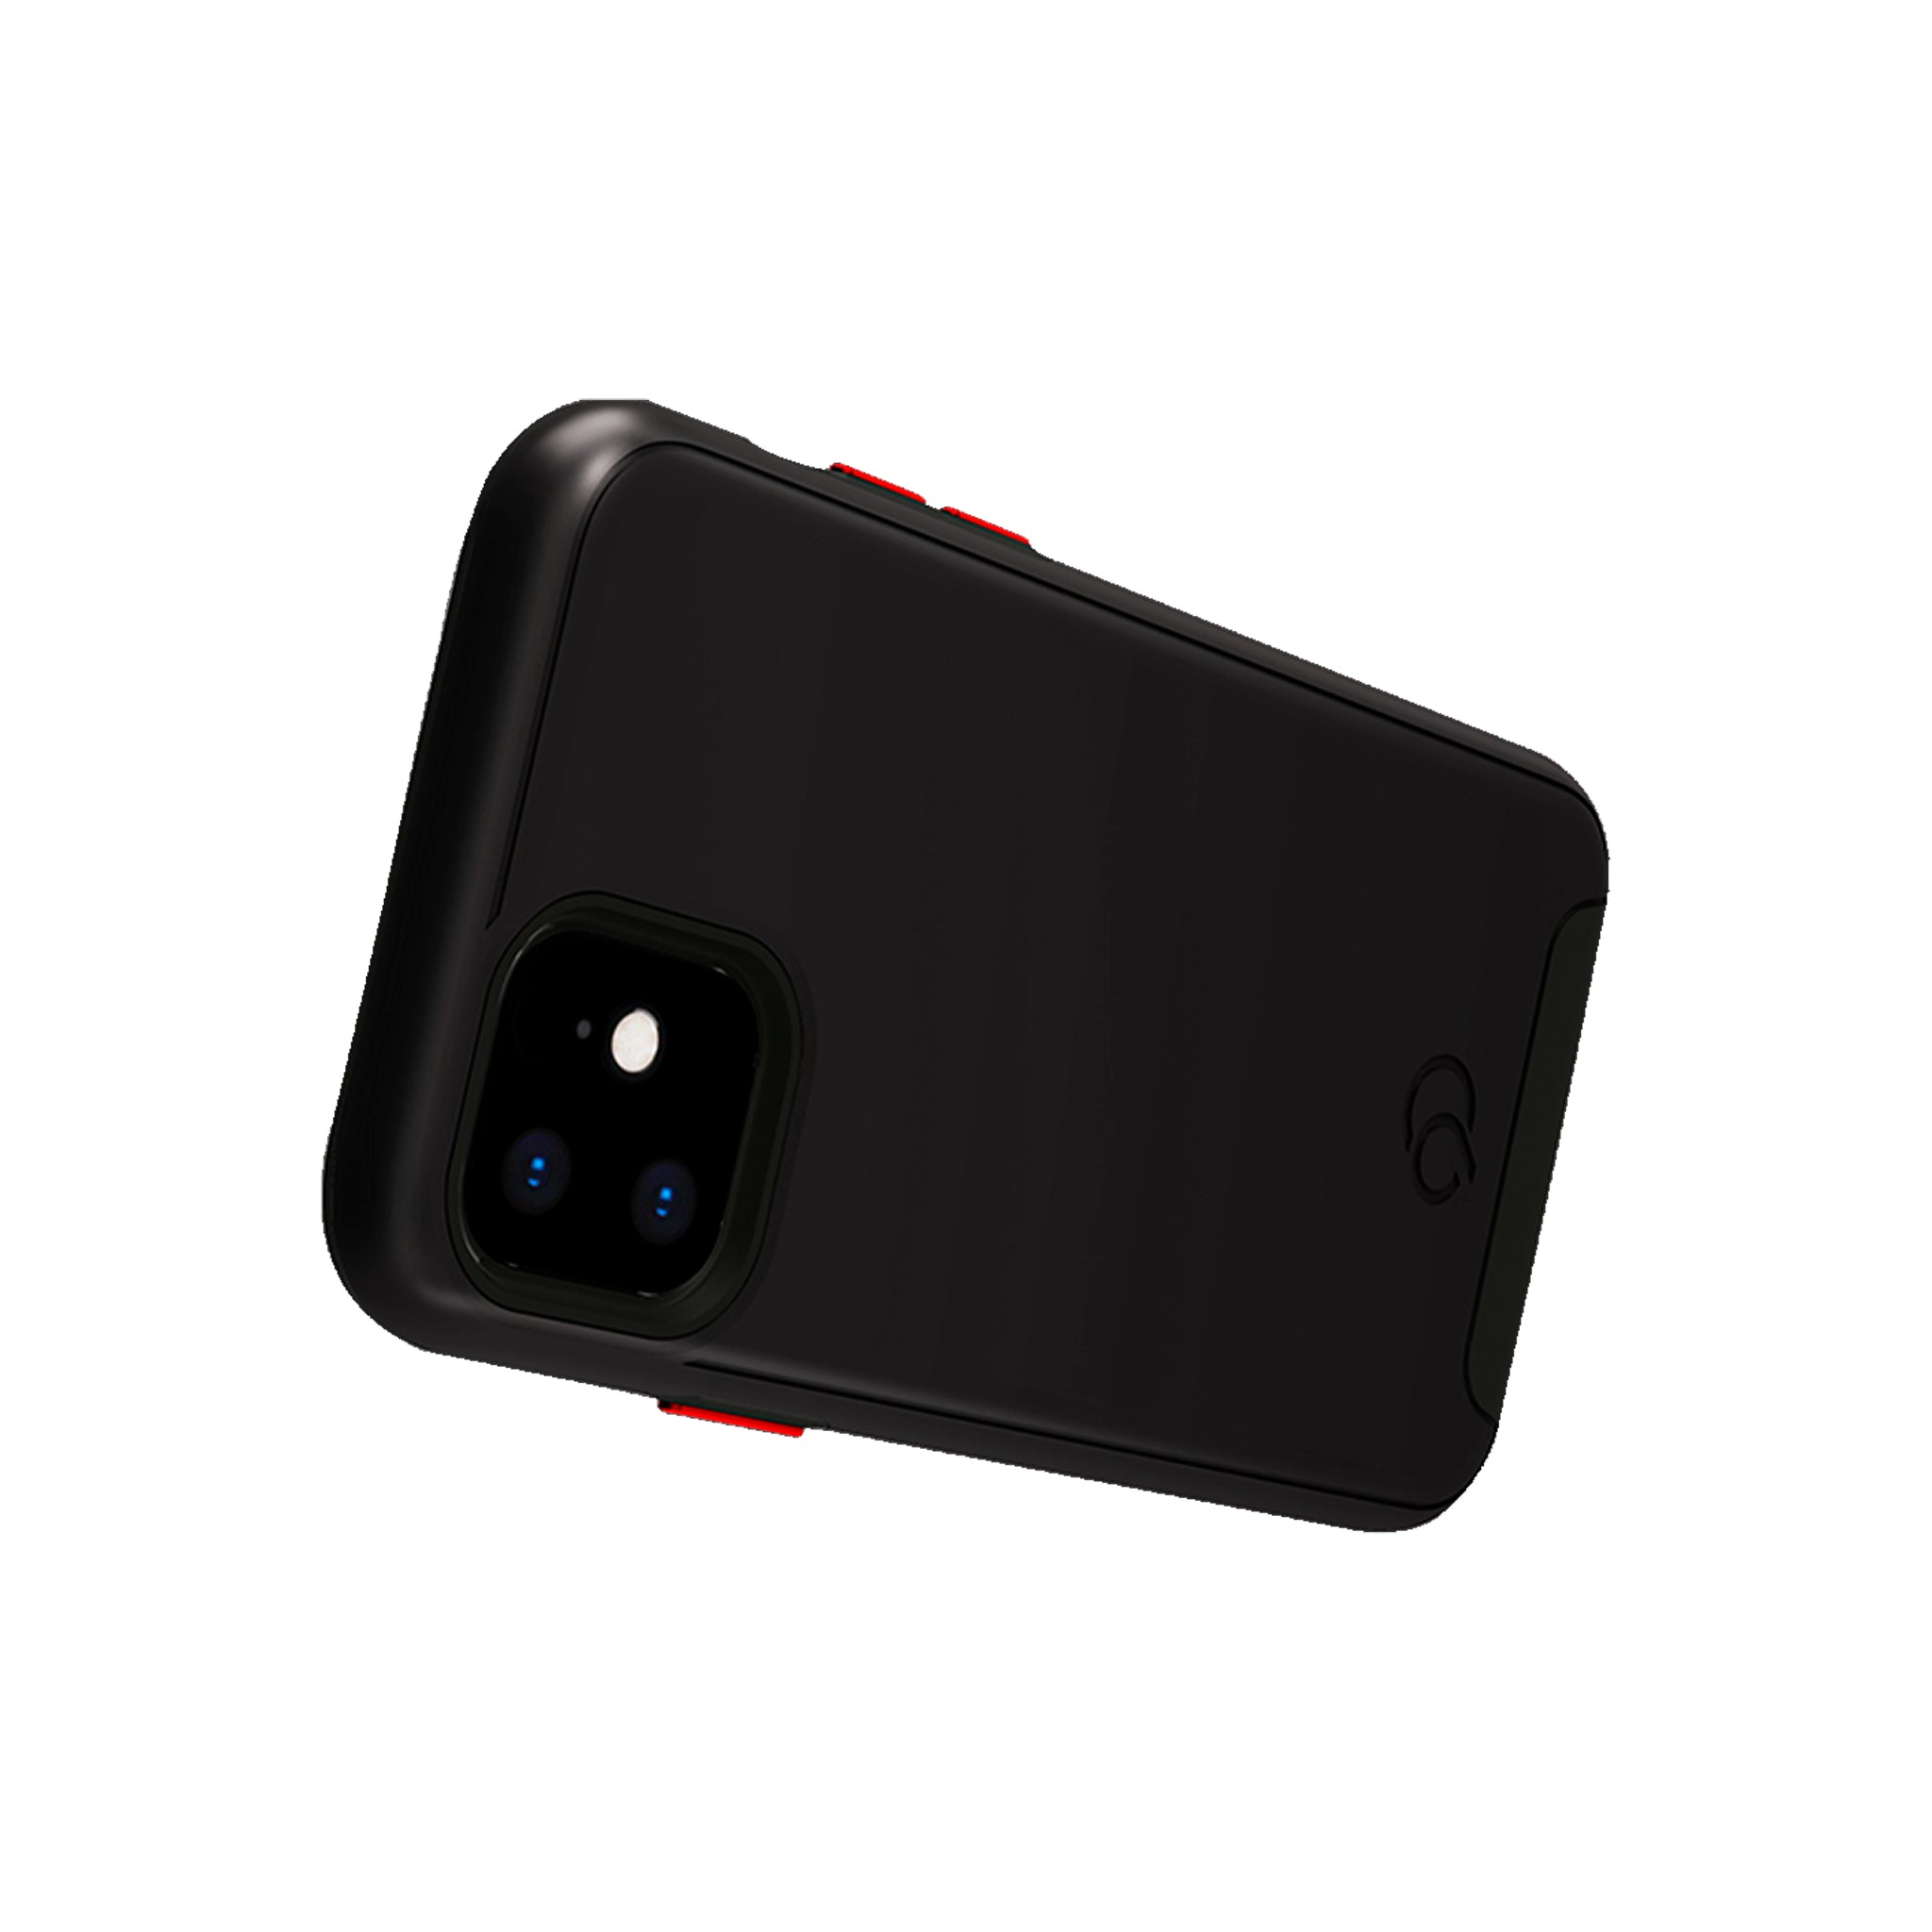 Nimbus9 - Cirrus 2 Case For Apple Iphone 11 - Black